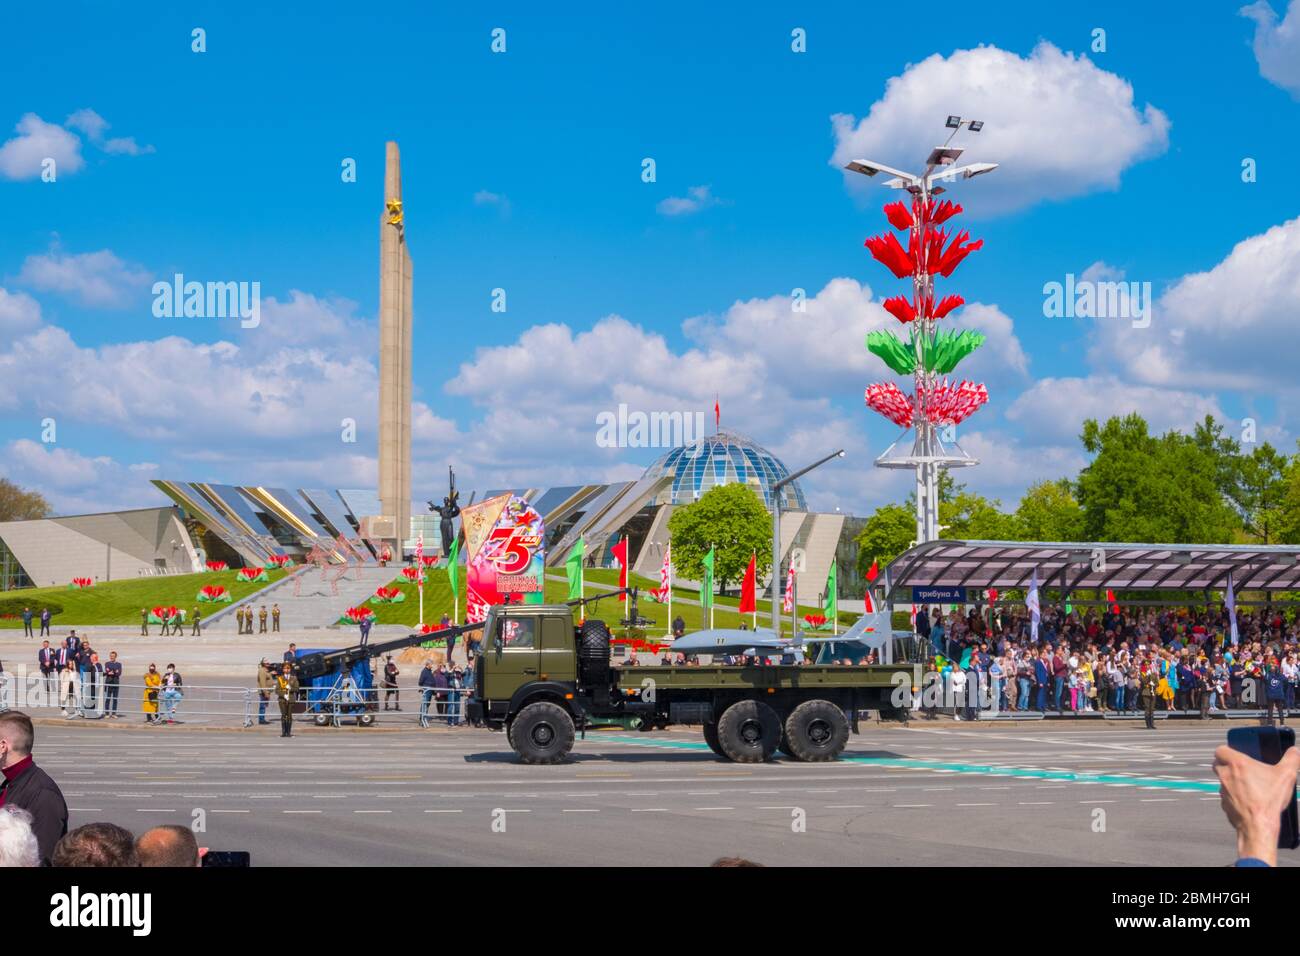 Minsk, Bielorussia - 9 maggio 2020: Parata militare per la celebrazione del 75° anniversario della Vittoria nella Grande Guerra Patriottica. Vittoria del giorno 9 maggio Foto Stock